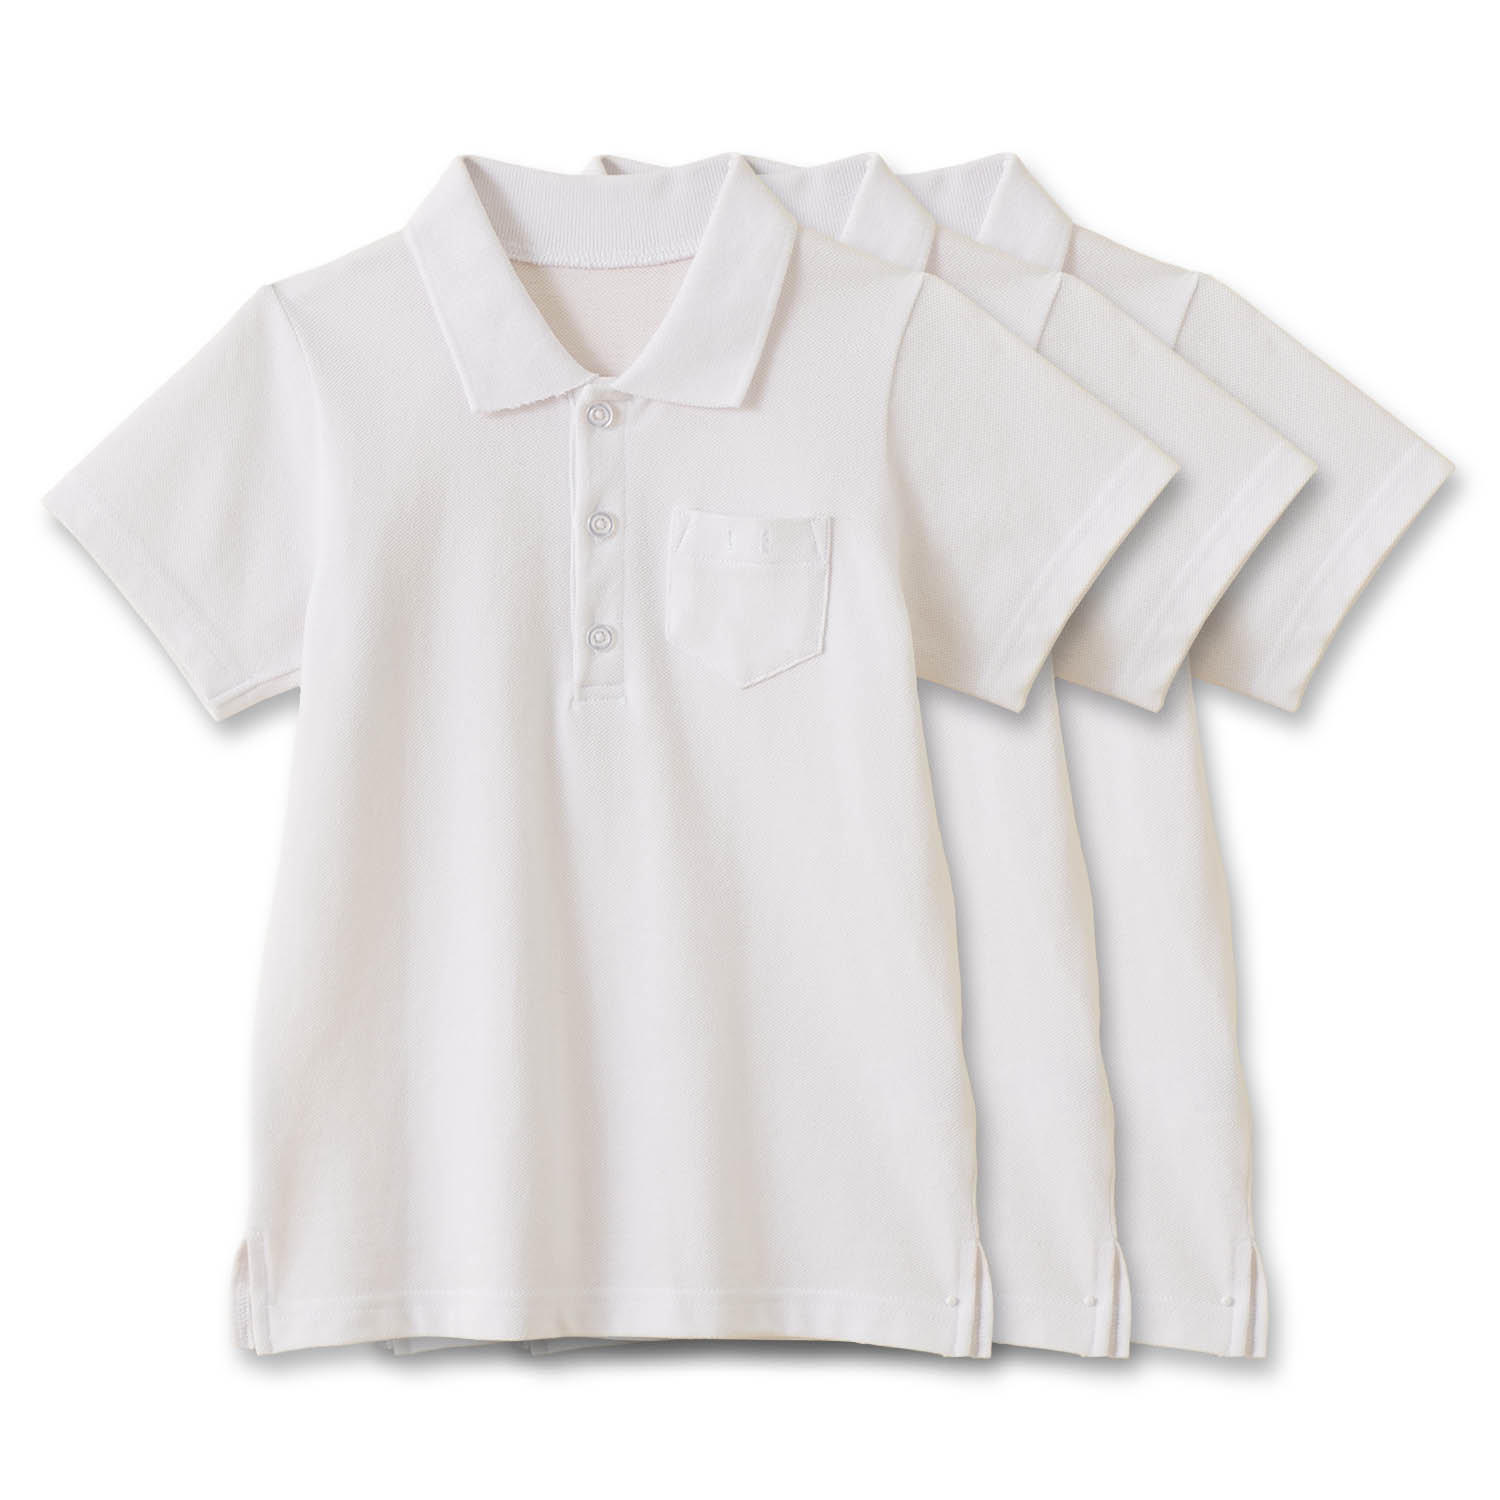 ポロシャツ シャツ スクールポロシャツ 半袖 3枚セット 子ども服 こども用 綿素材 ボタン 90 ...